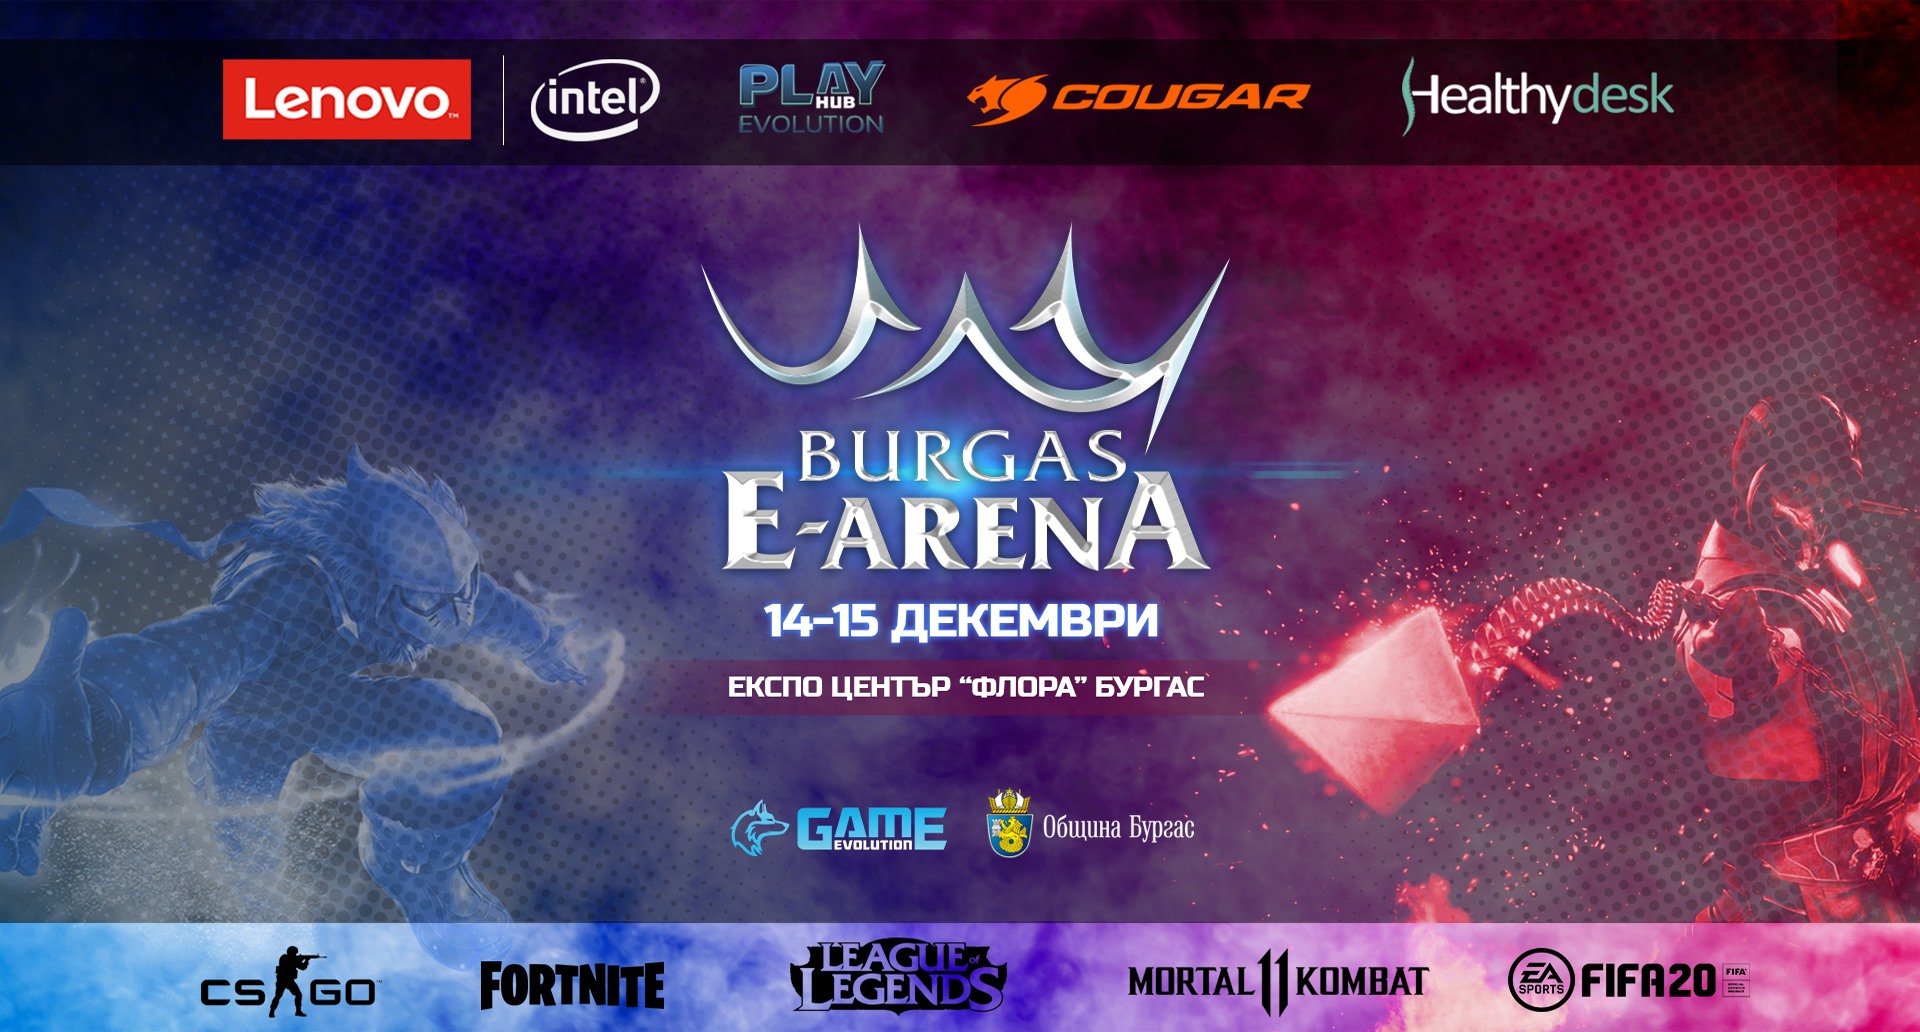 Силни битки очакват геймърите в Е-ARENA 2019 - E-Burgas.com